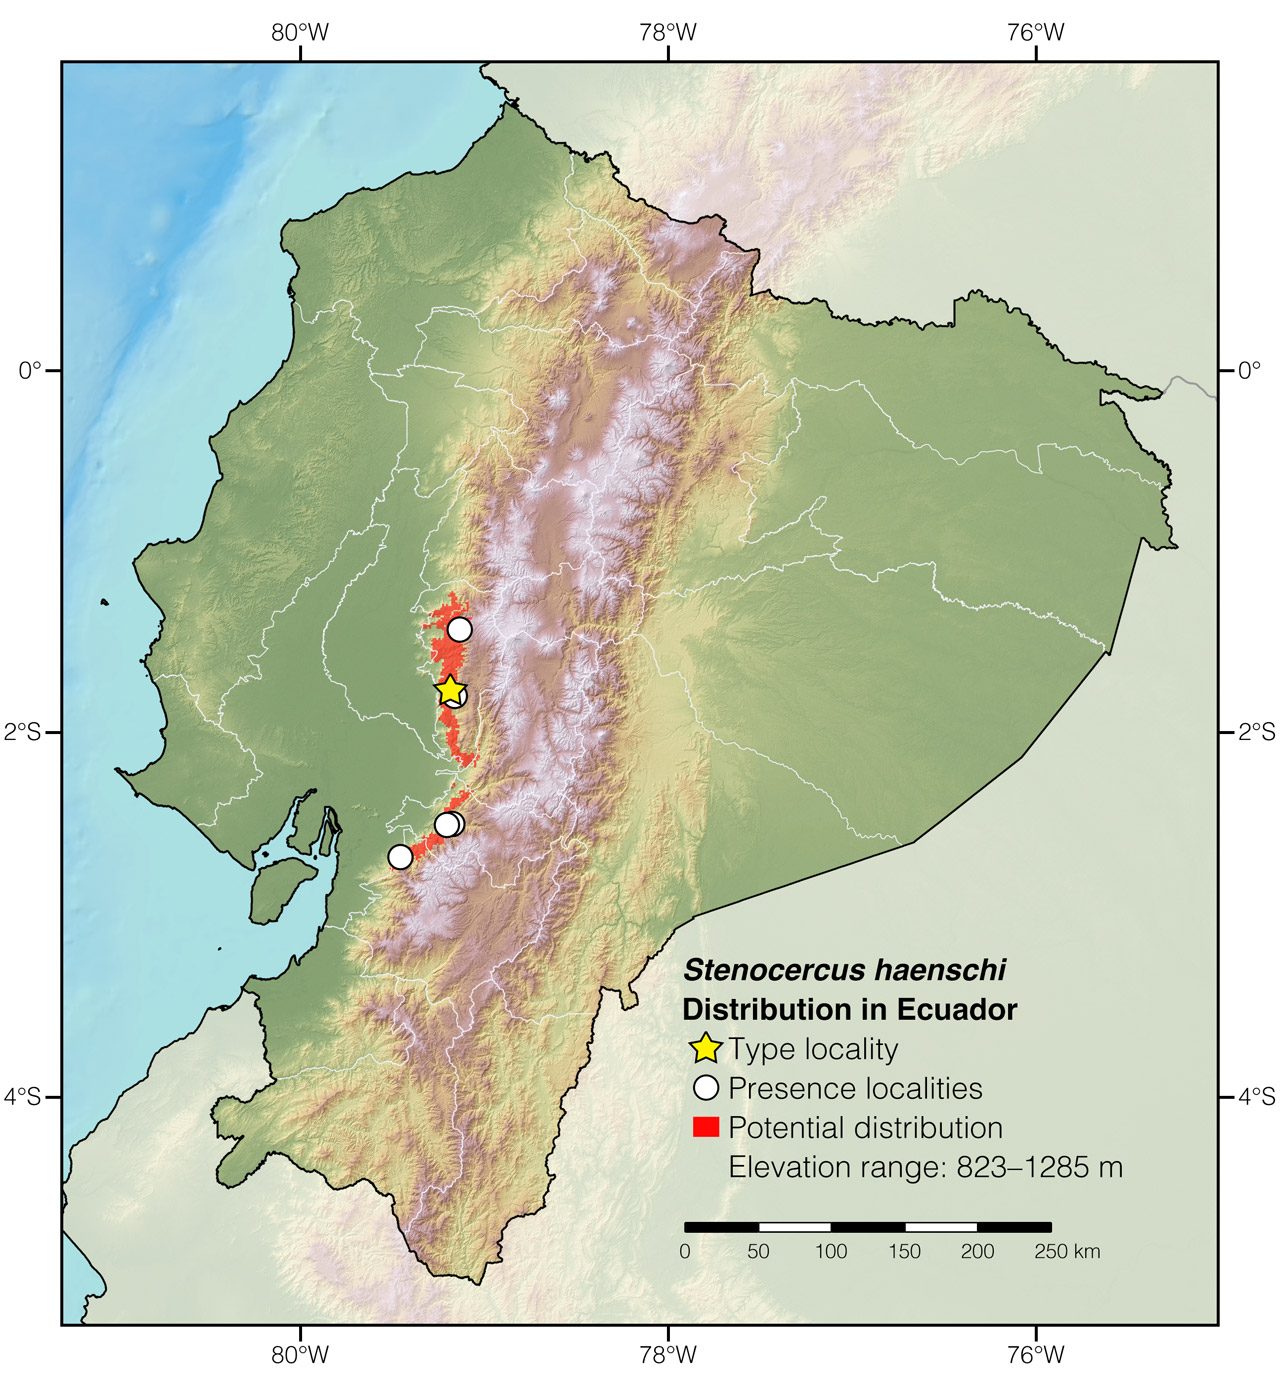 Distribution of Stenocercus haenschi in Ecuador